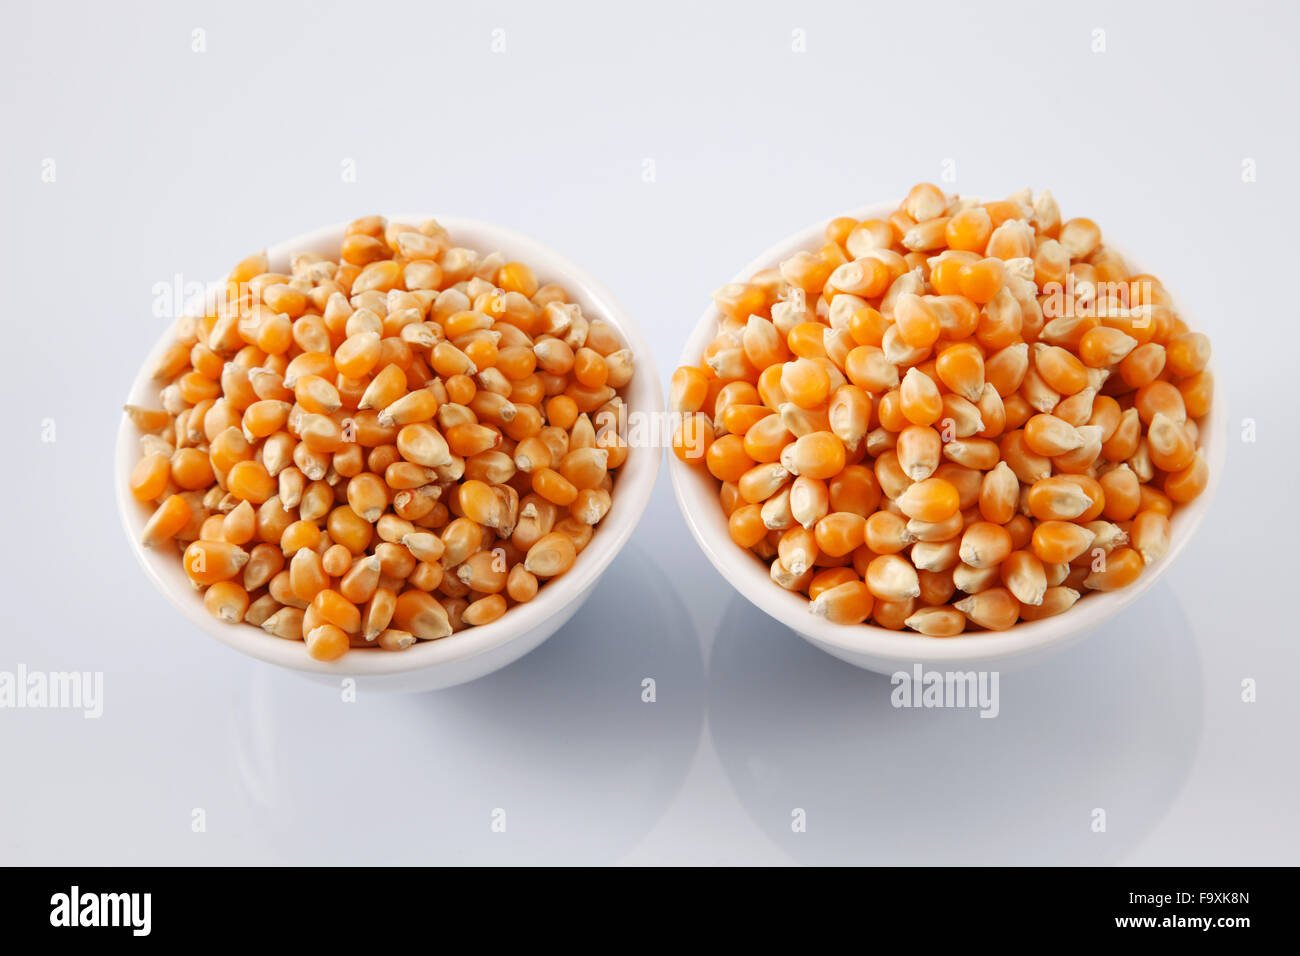 compare maize corn of different grade Stock Photo